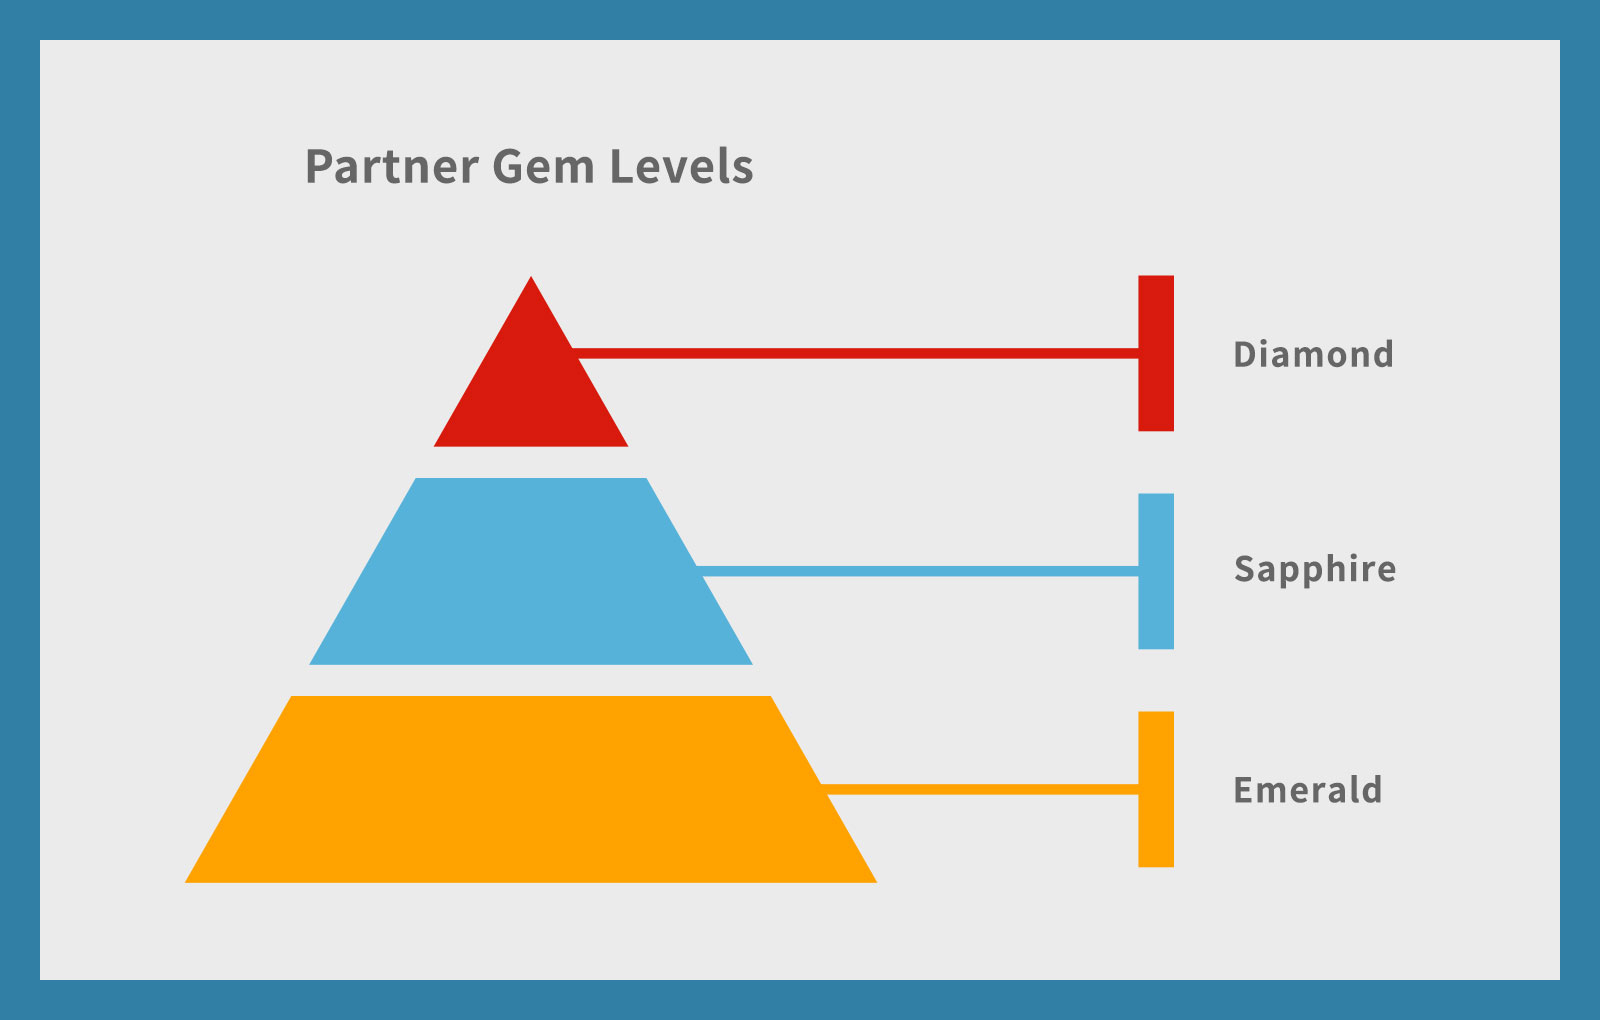 Partner Gem Levels